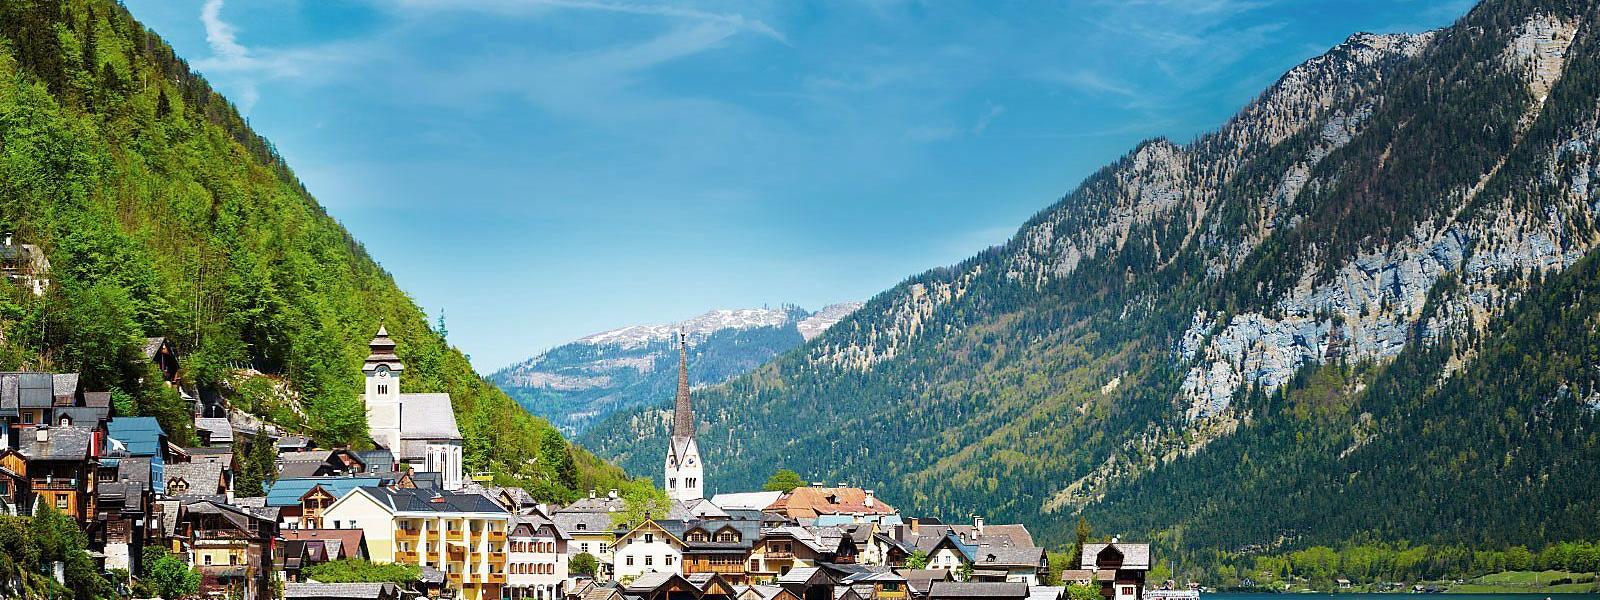 Ferienwohnungen und Ferienhäuser in den Österreichischen Alpen - atraveo